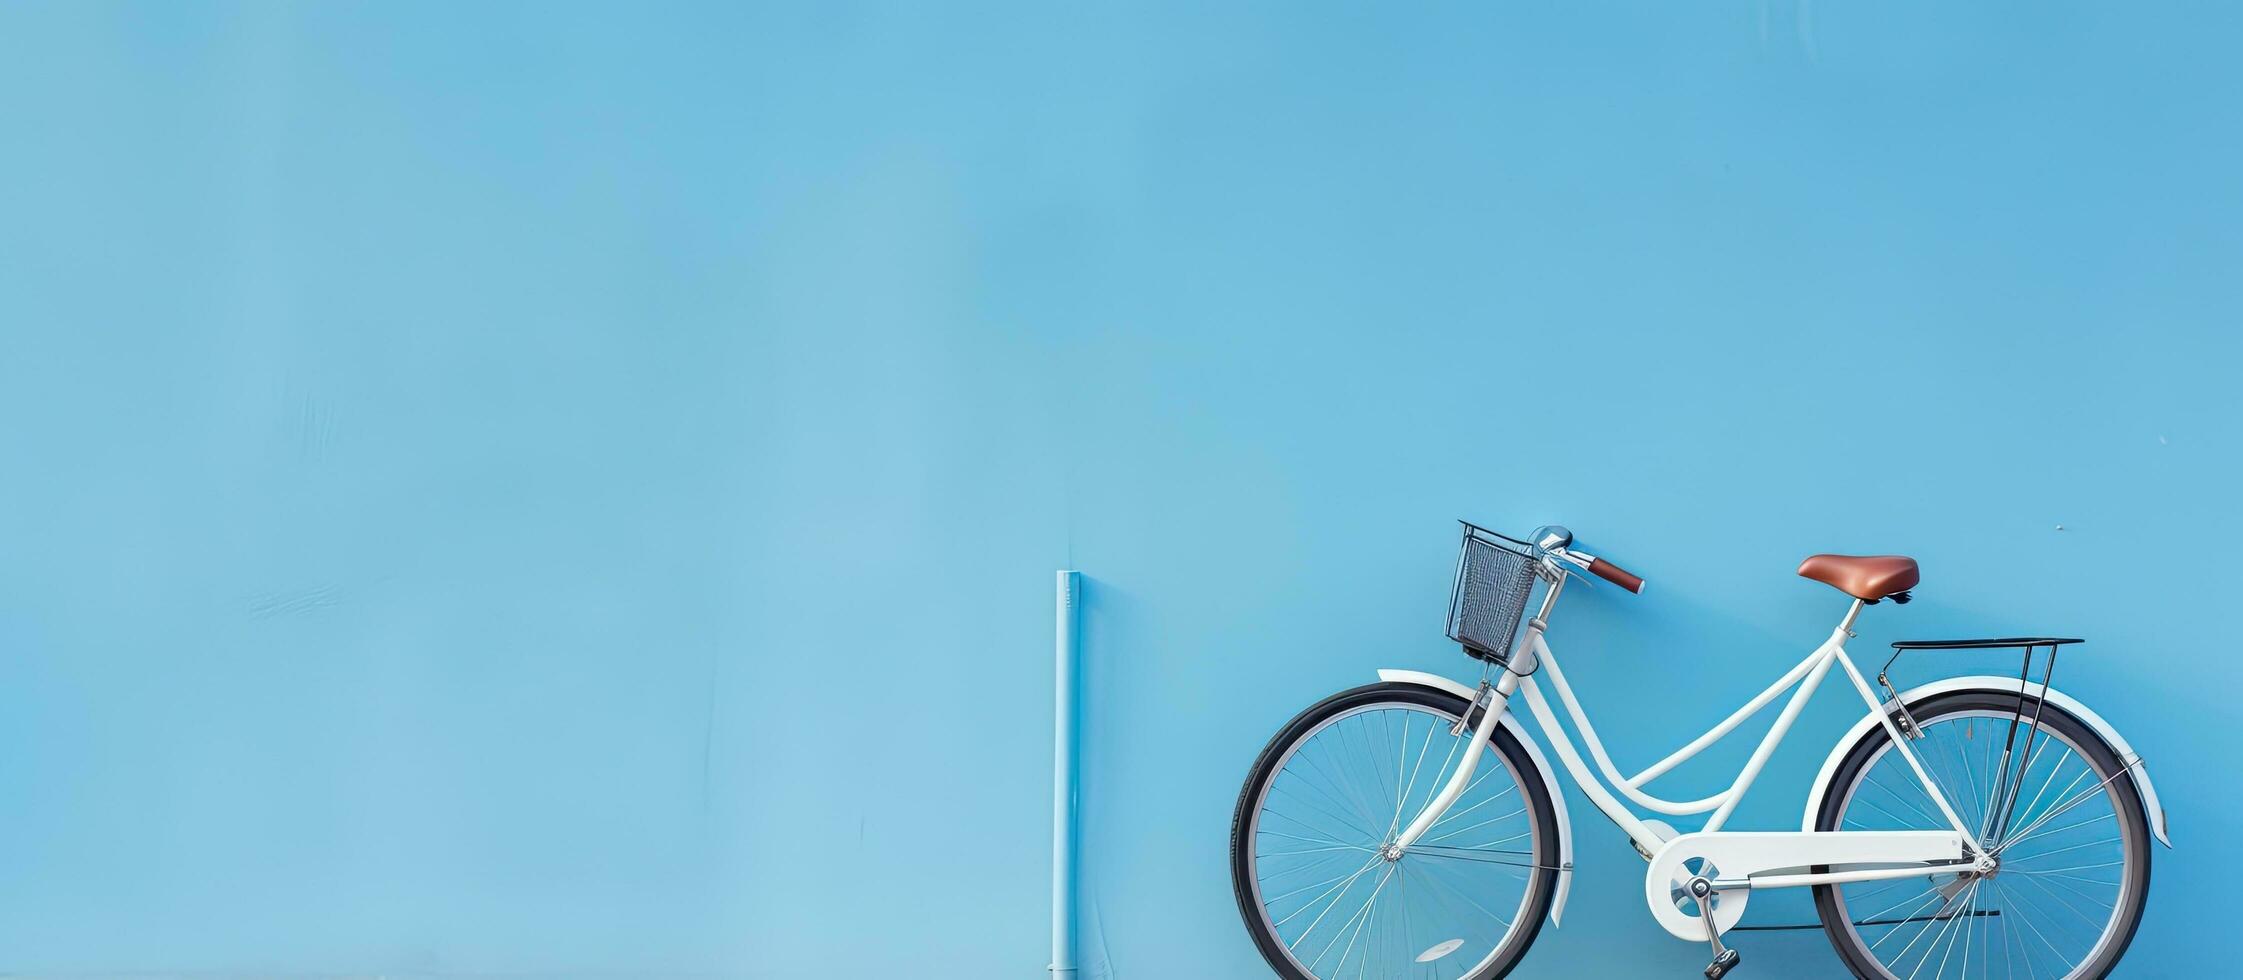 une haute qualité photo de une vélo est positionné contre une bleu mur, avec vide espace disponible